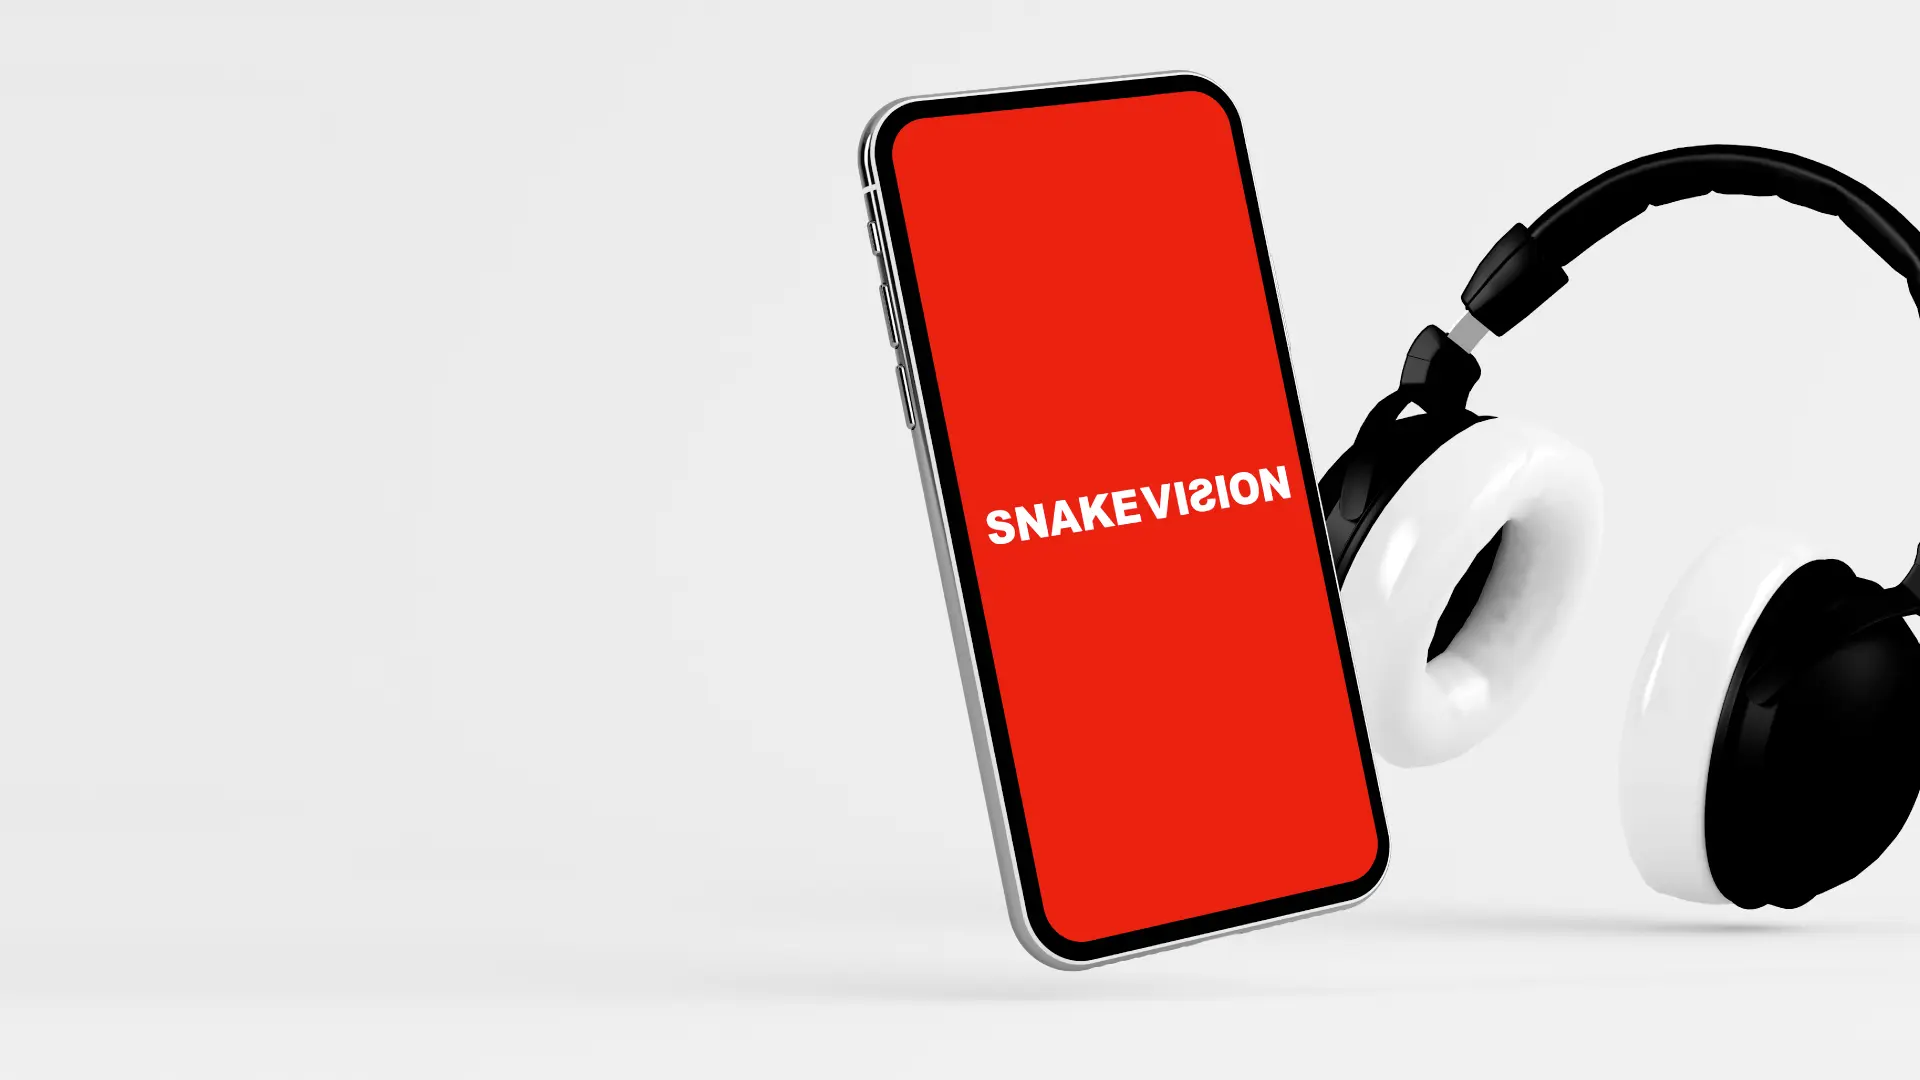 Snake Vision